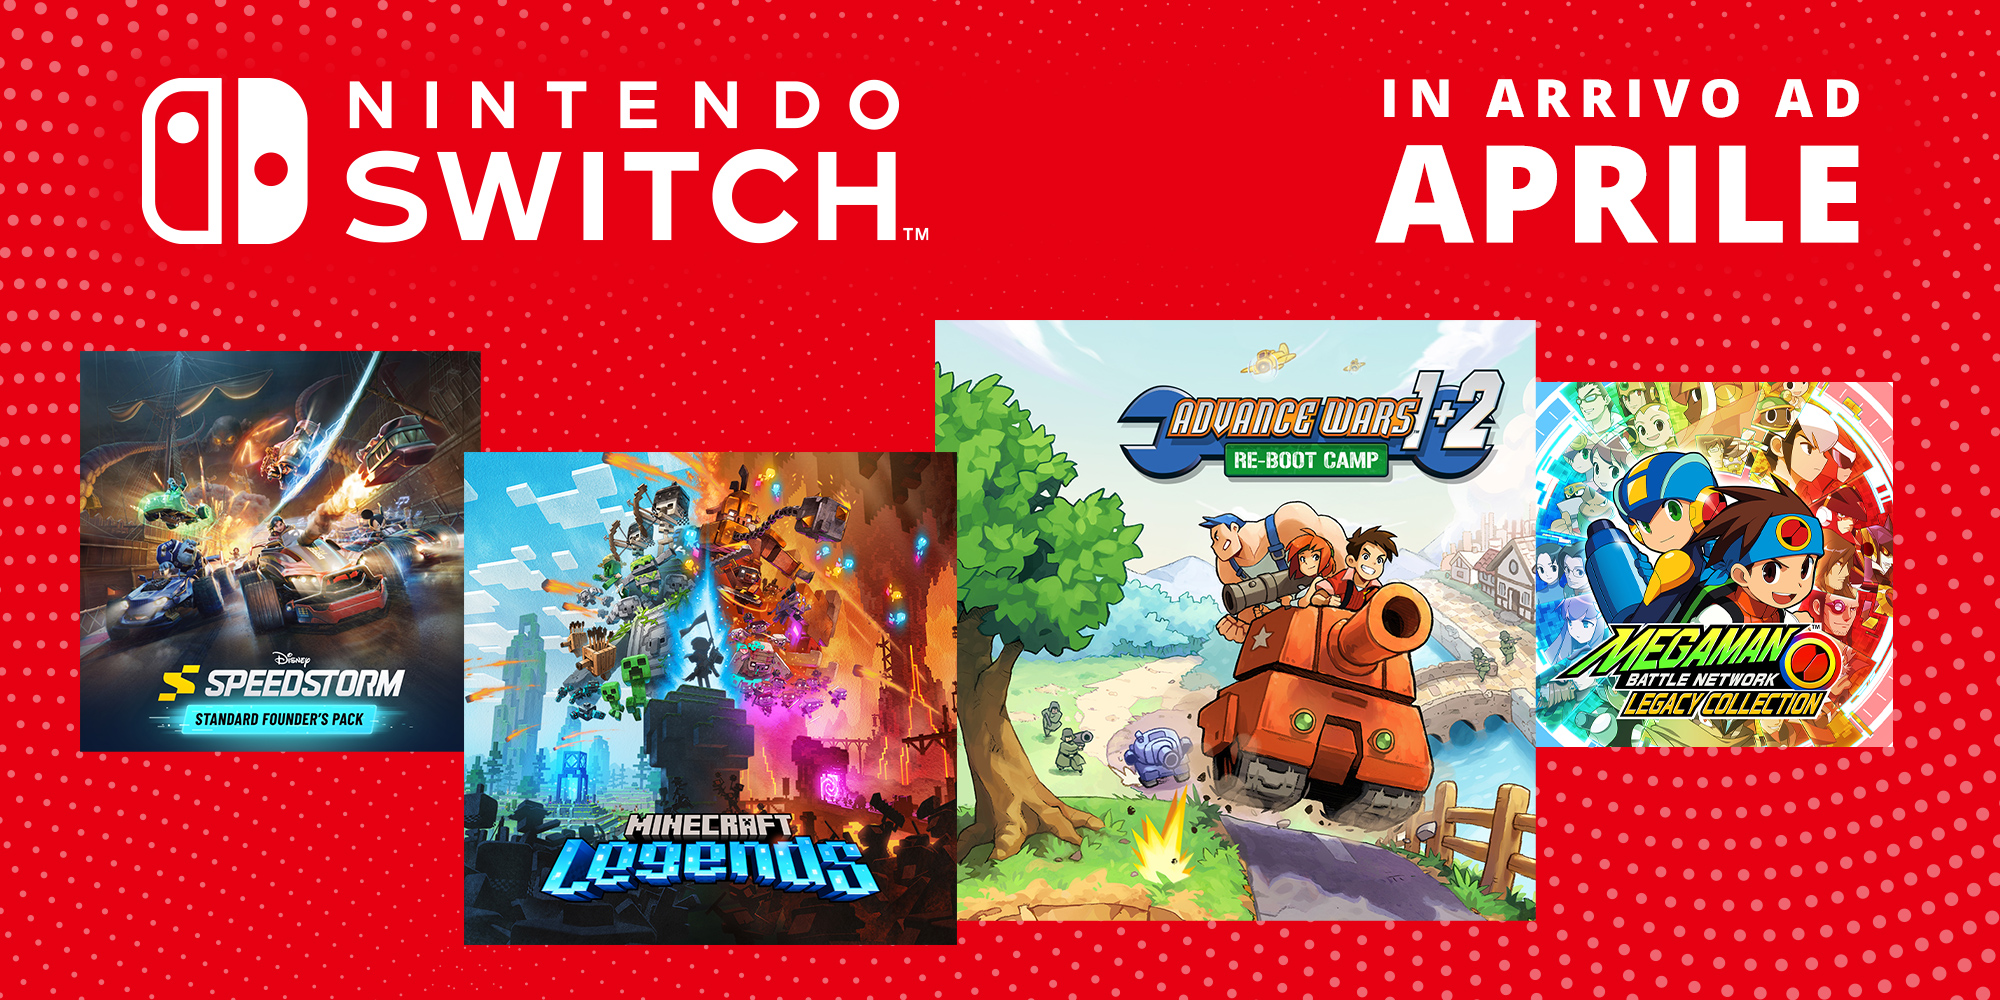 I giochi per Nintendo Switch in arrivo ad aprile 2023